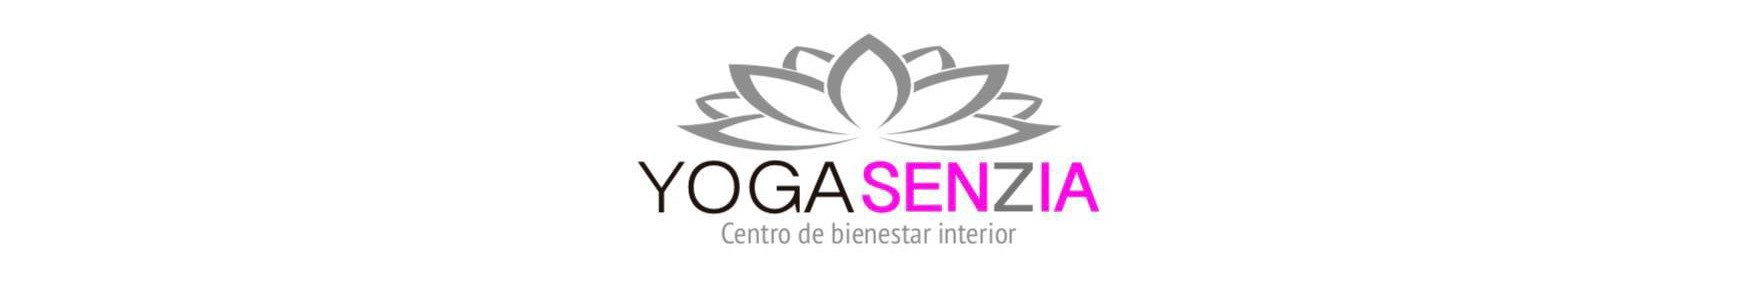 Centro de bienestar interior YogaSenzia